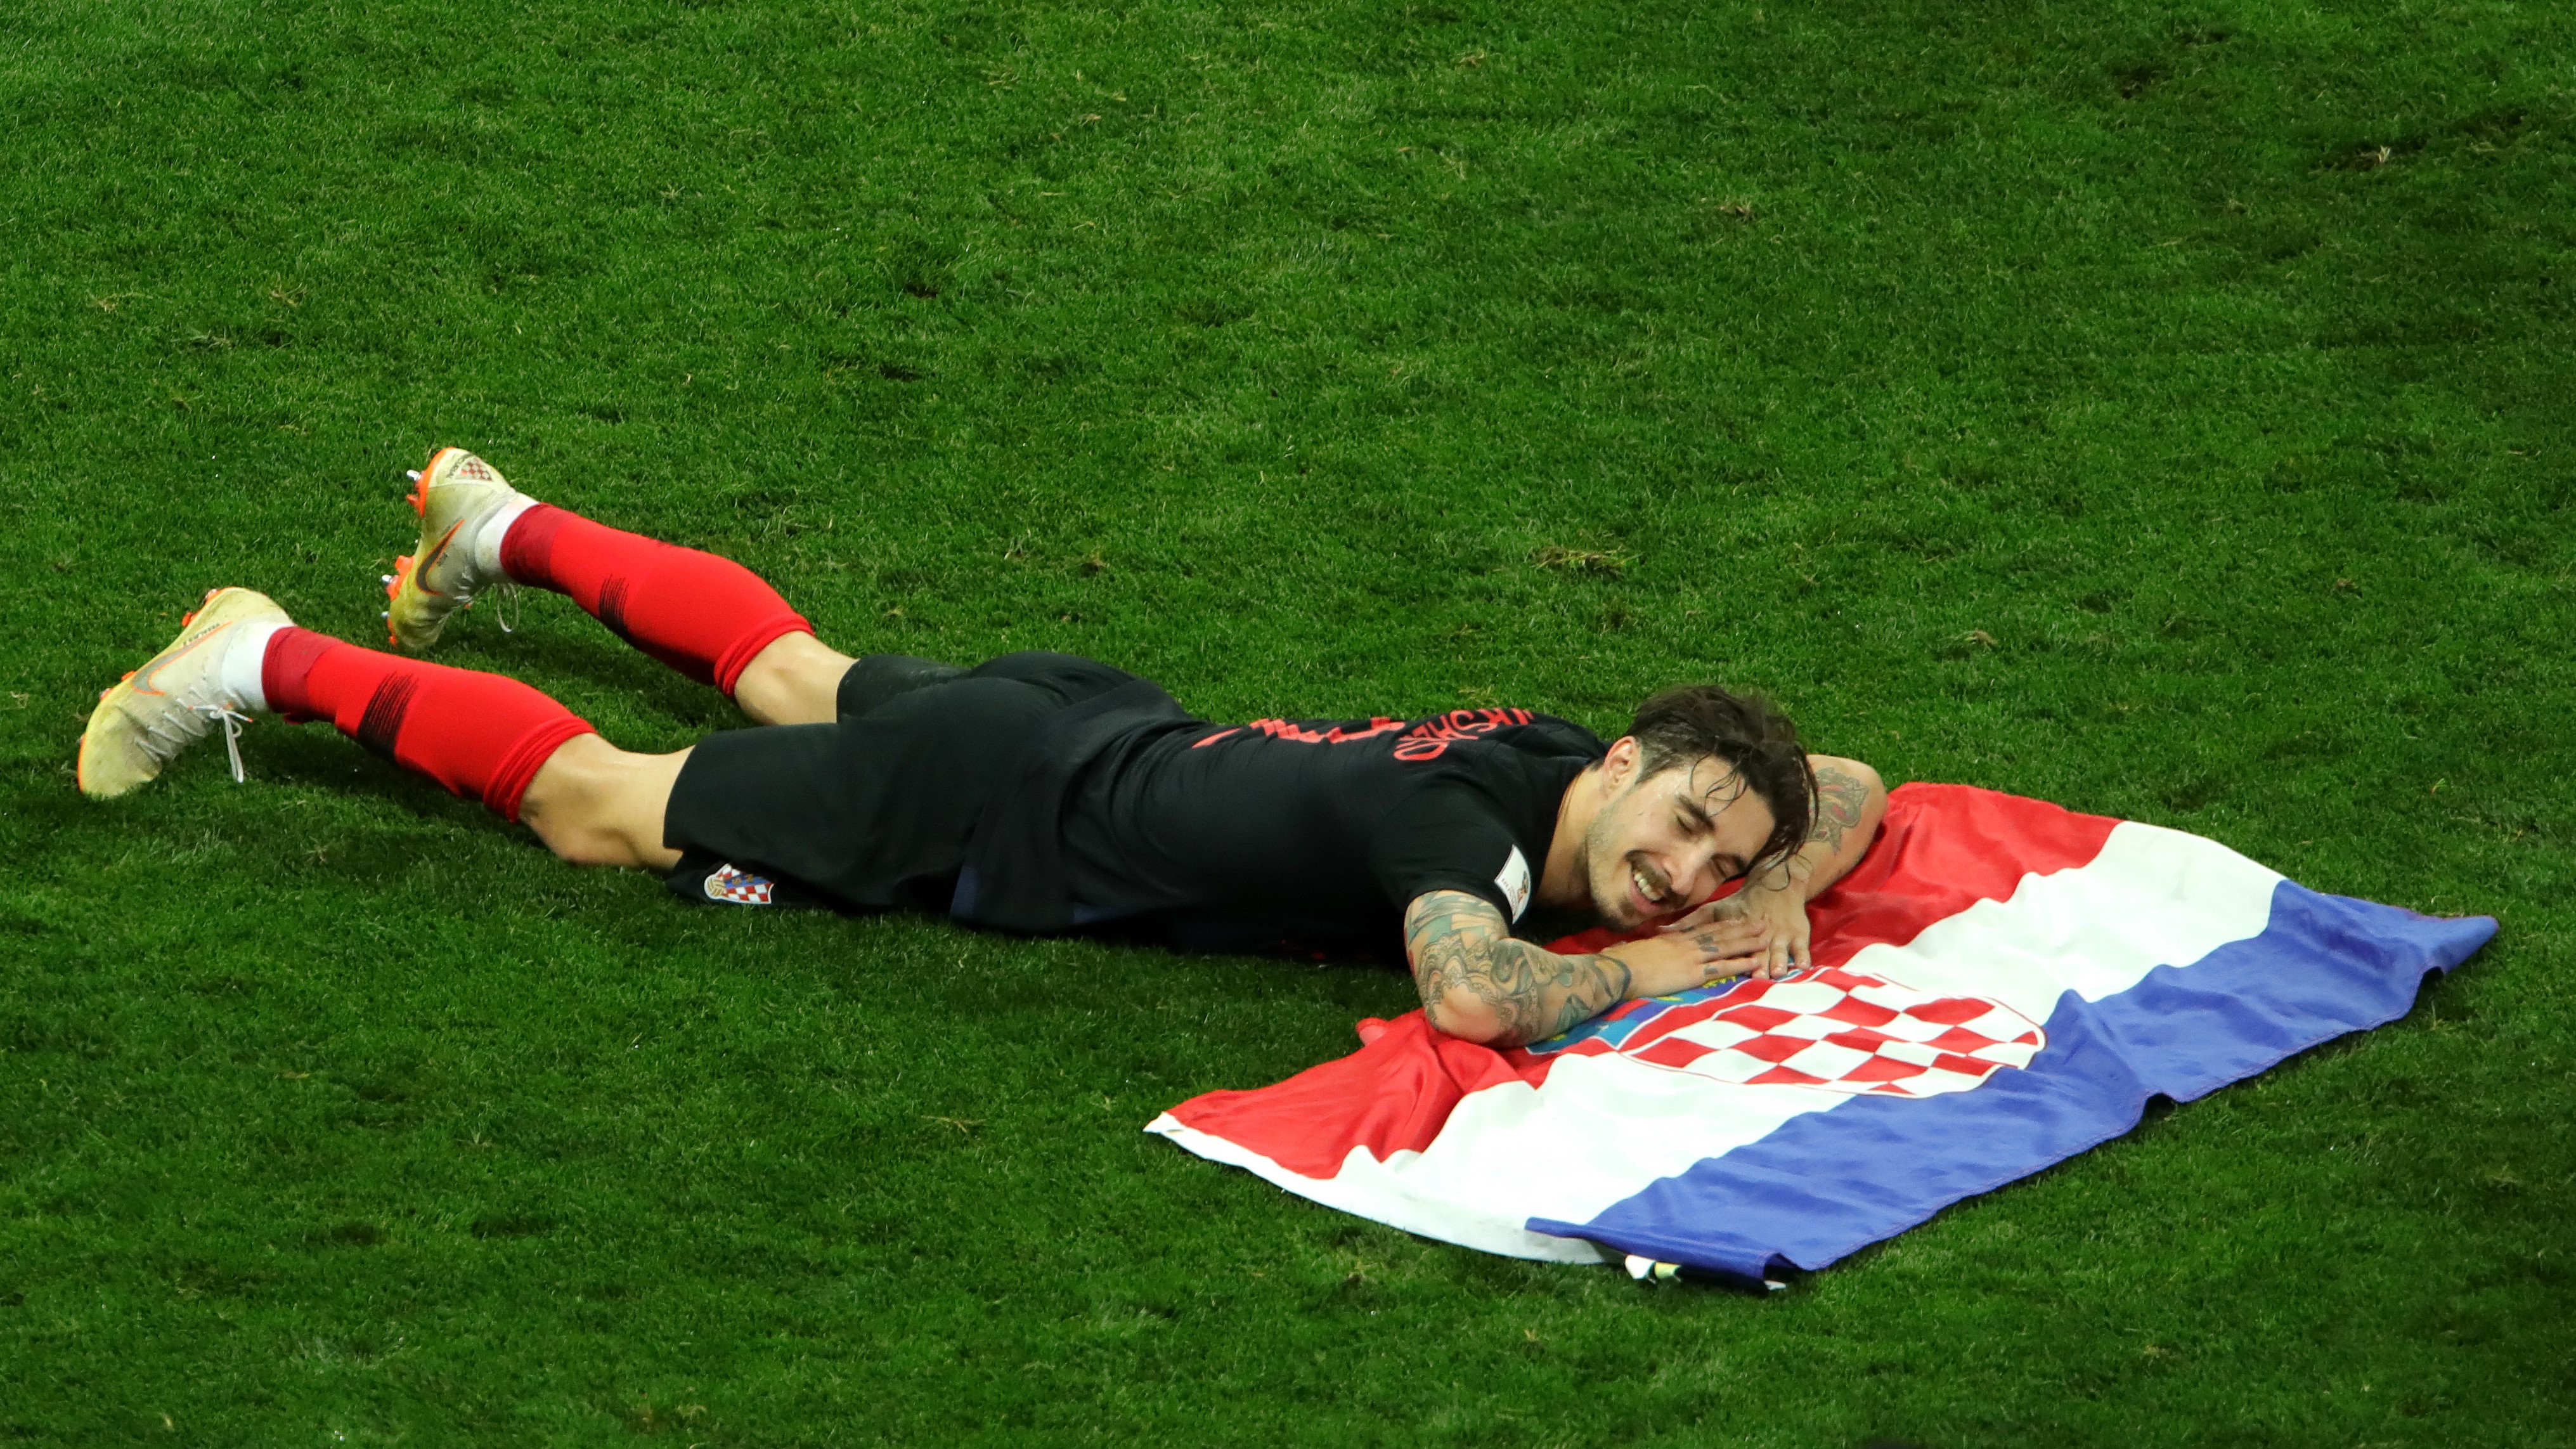 Šime Vrsaljko, naš desni bek, leži na nogometnom travnjaku radosnog izraza lica dok mu ruke i glava počivaju na položenoj hrvatskoj zastavi.